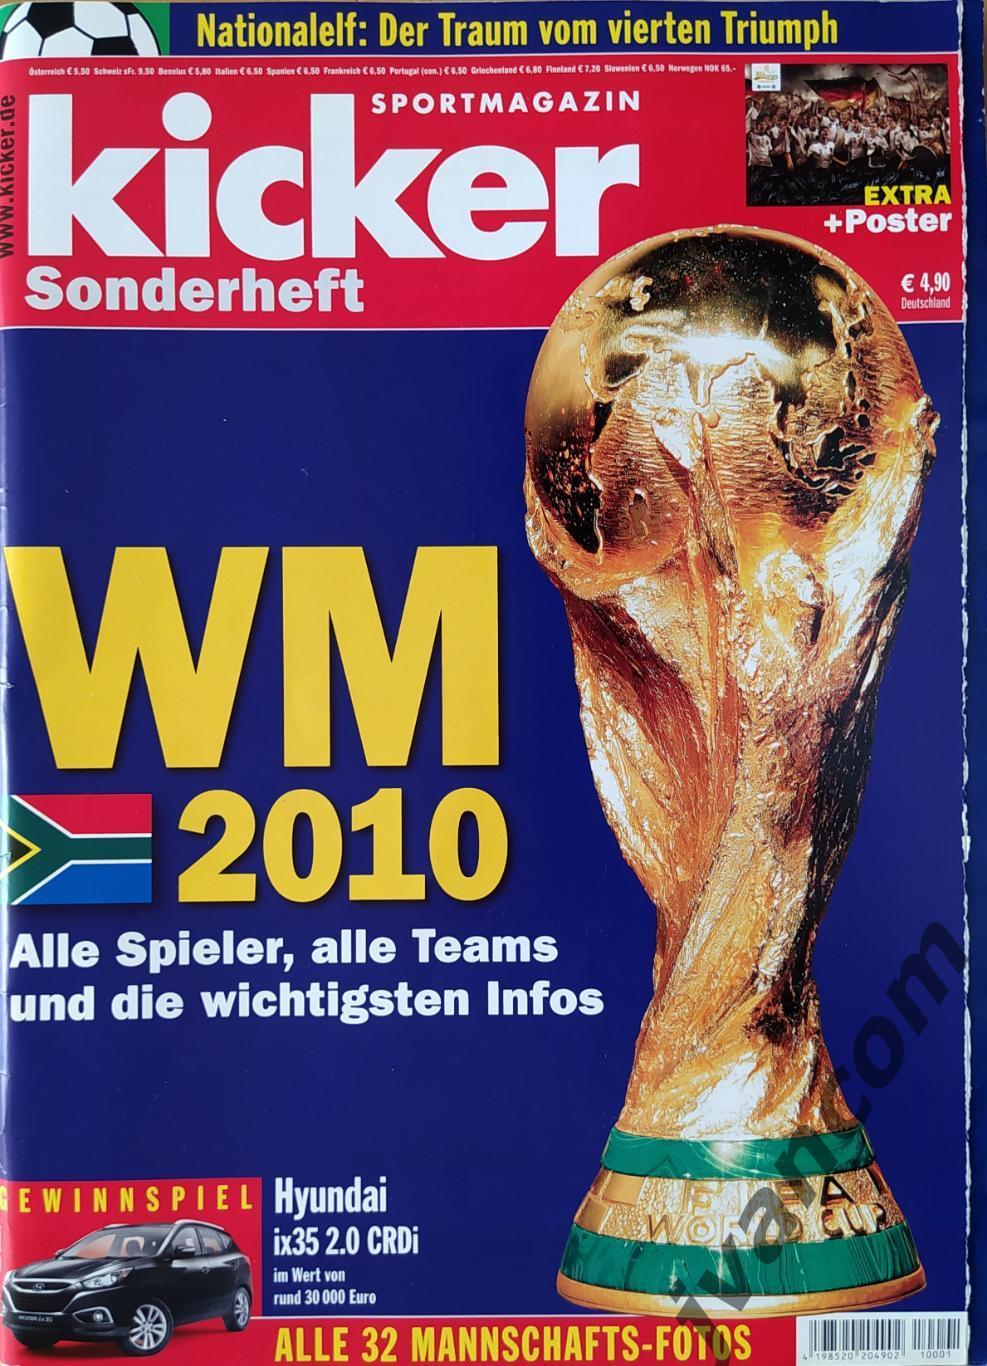 KICKER SONDERHEFT. Чемпионат Мира по футболу 2010 года. Превью участников.